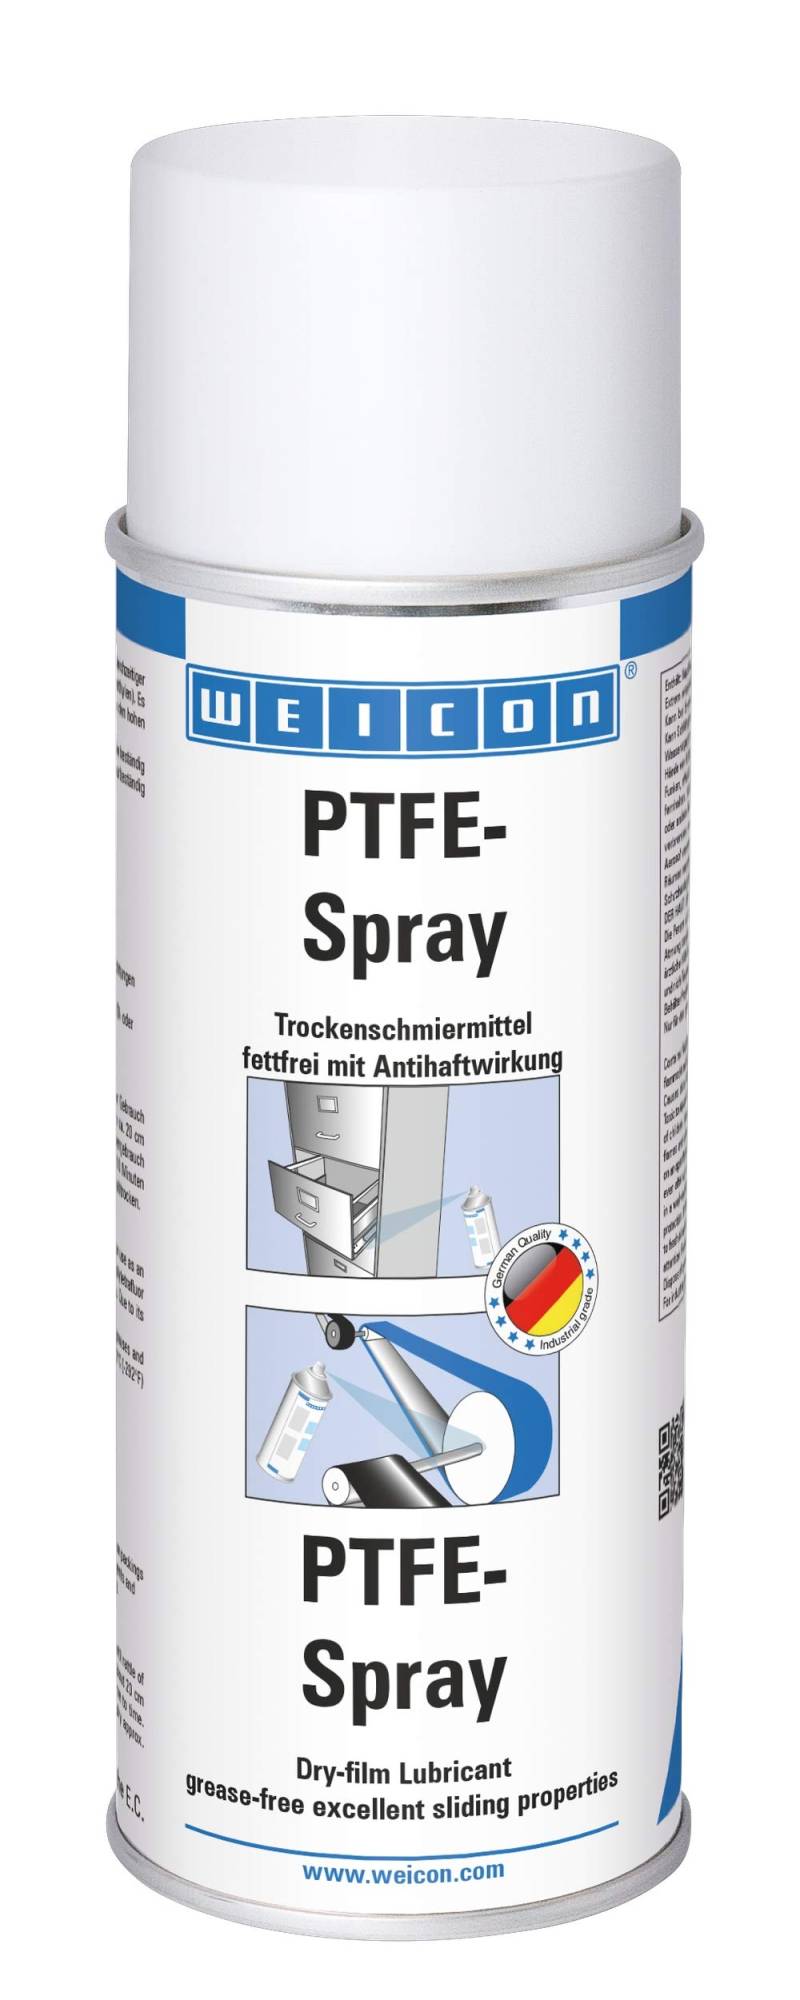 WEICON PTFE Spray 400ml | Trockenschmiermittel mit Antihaft-Effekt | fettfrei | Weiß von WEICON